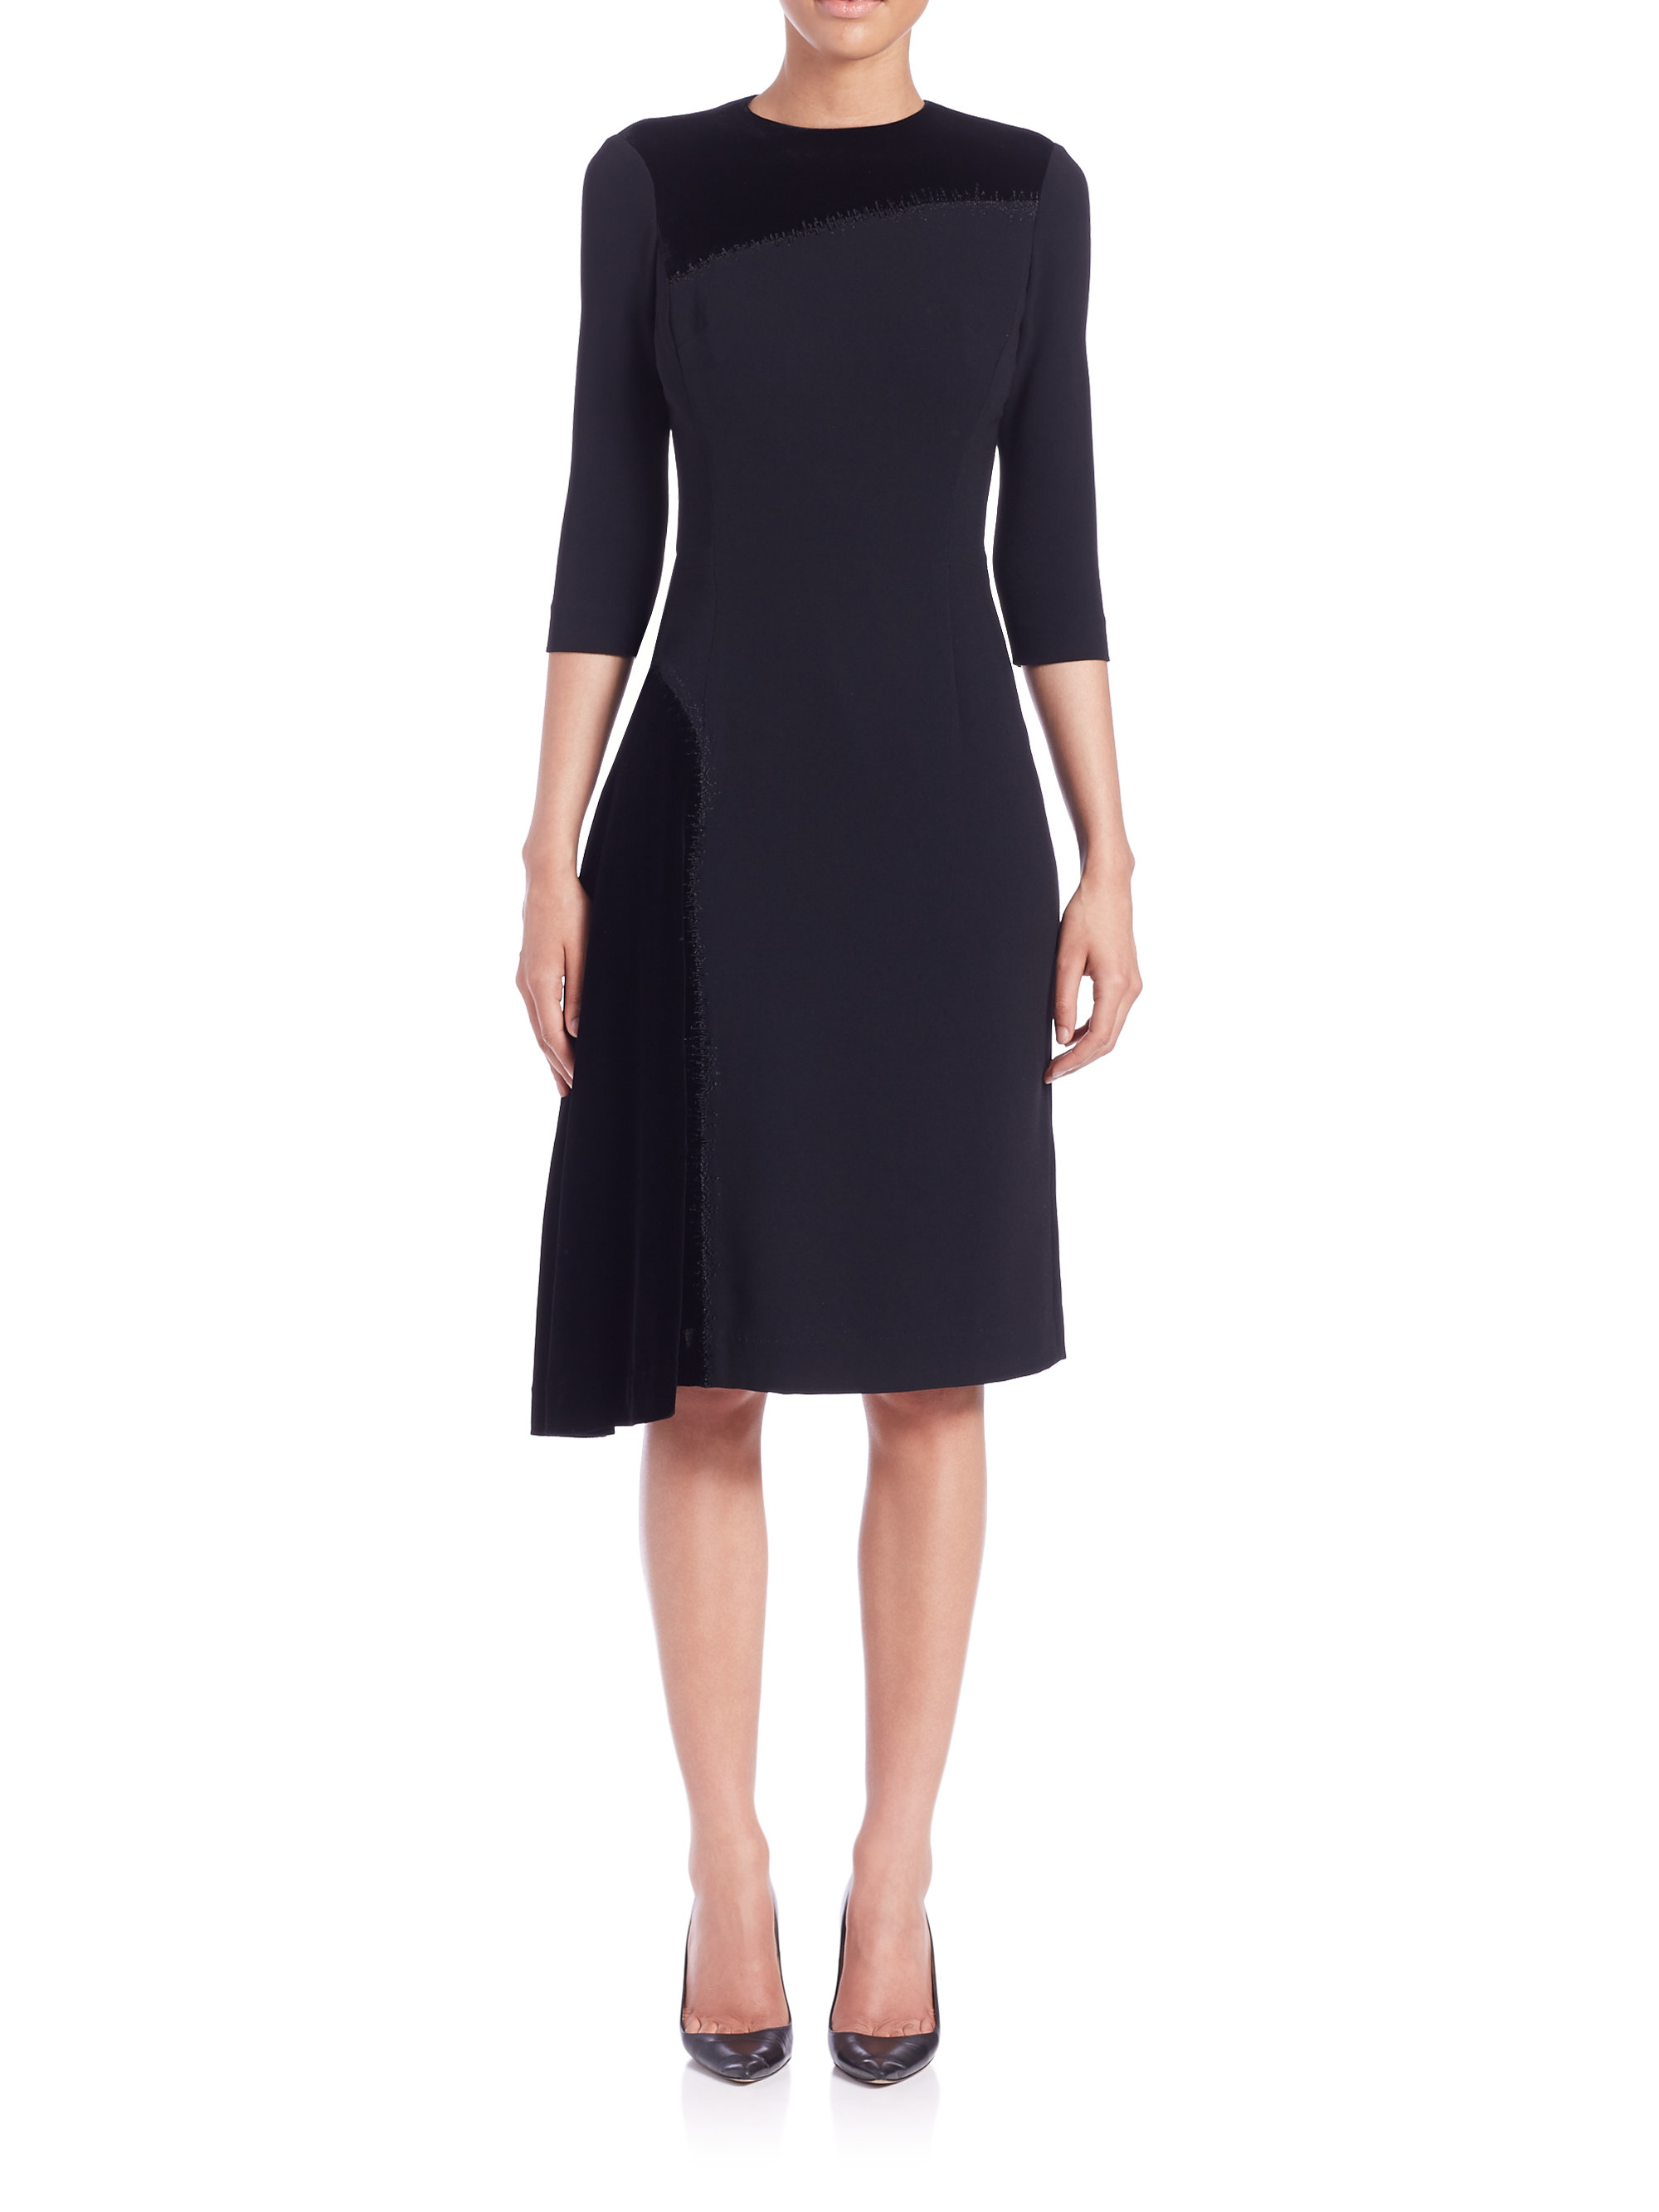 Lyst - Teri Jon Velvet Three-quarter Sleeve Asymmetrical Dress in Black